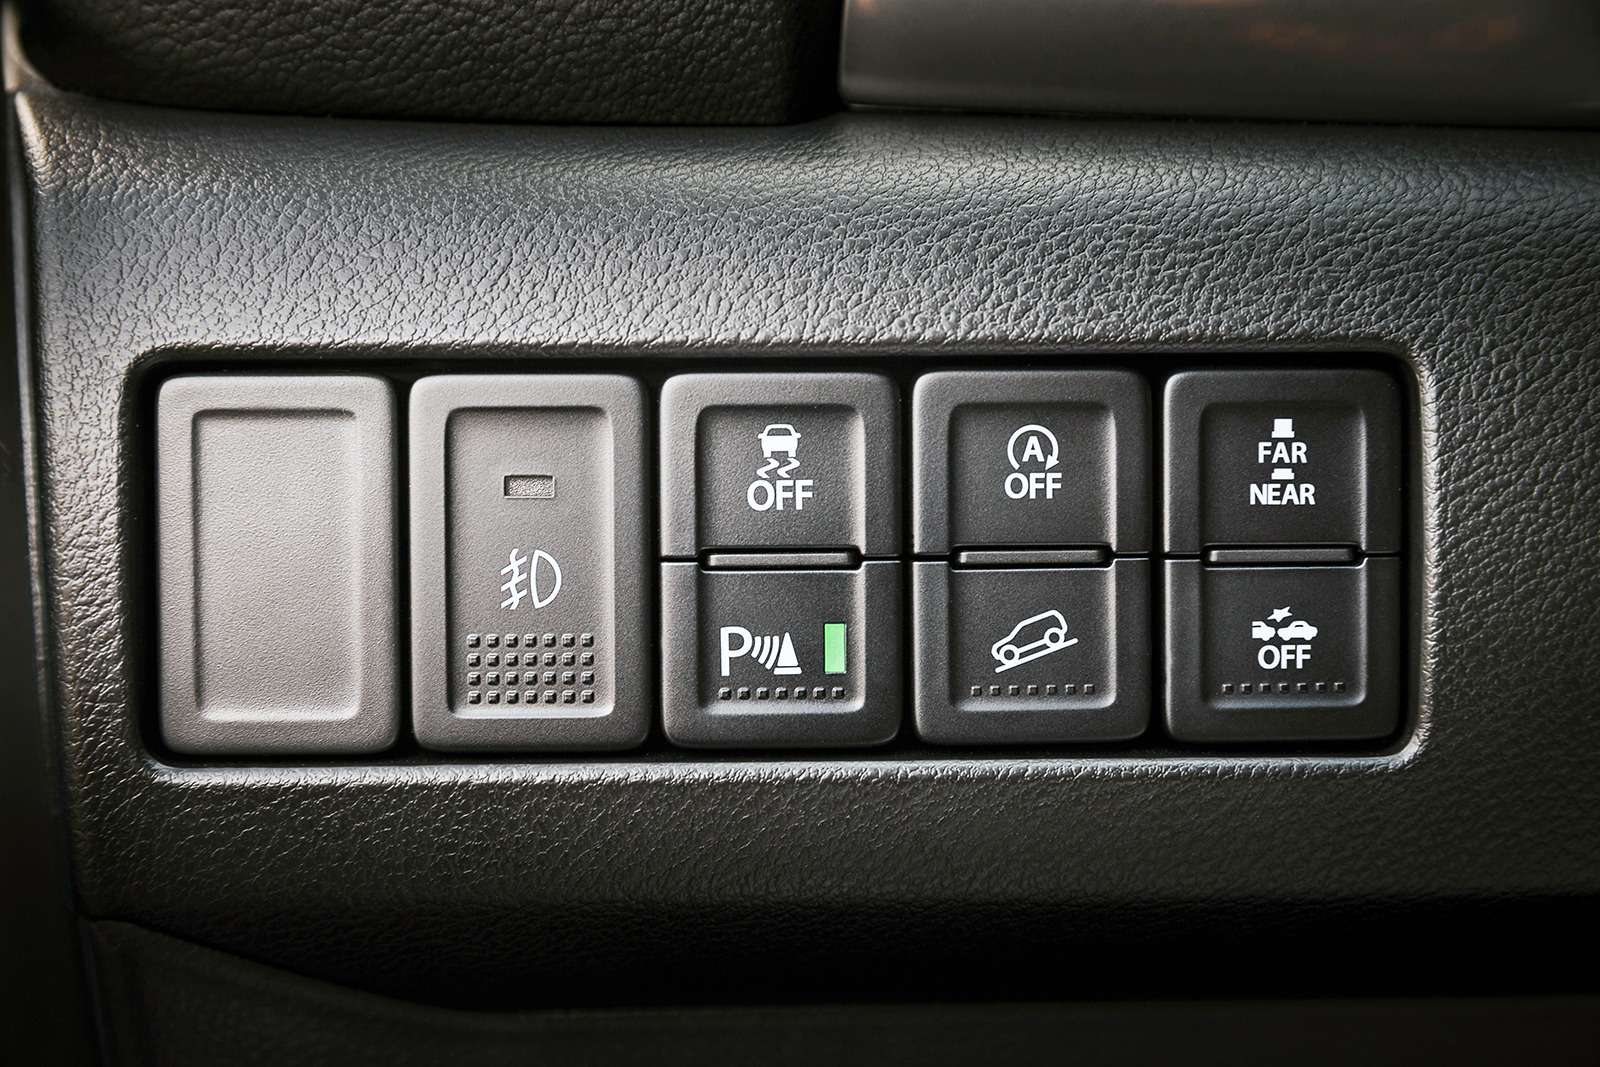 Система Pre collision (крайние кнопки справа) позволяет держать безопасную дистанцию до впереди идущего автомобиля.